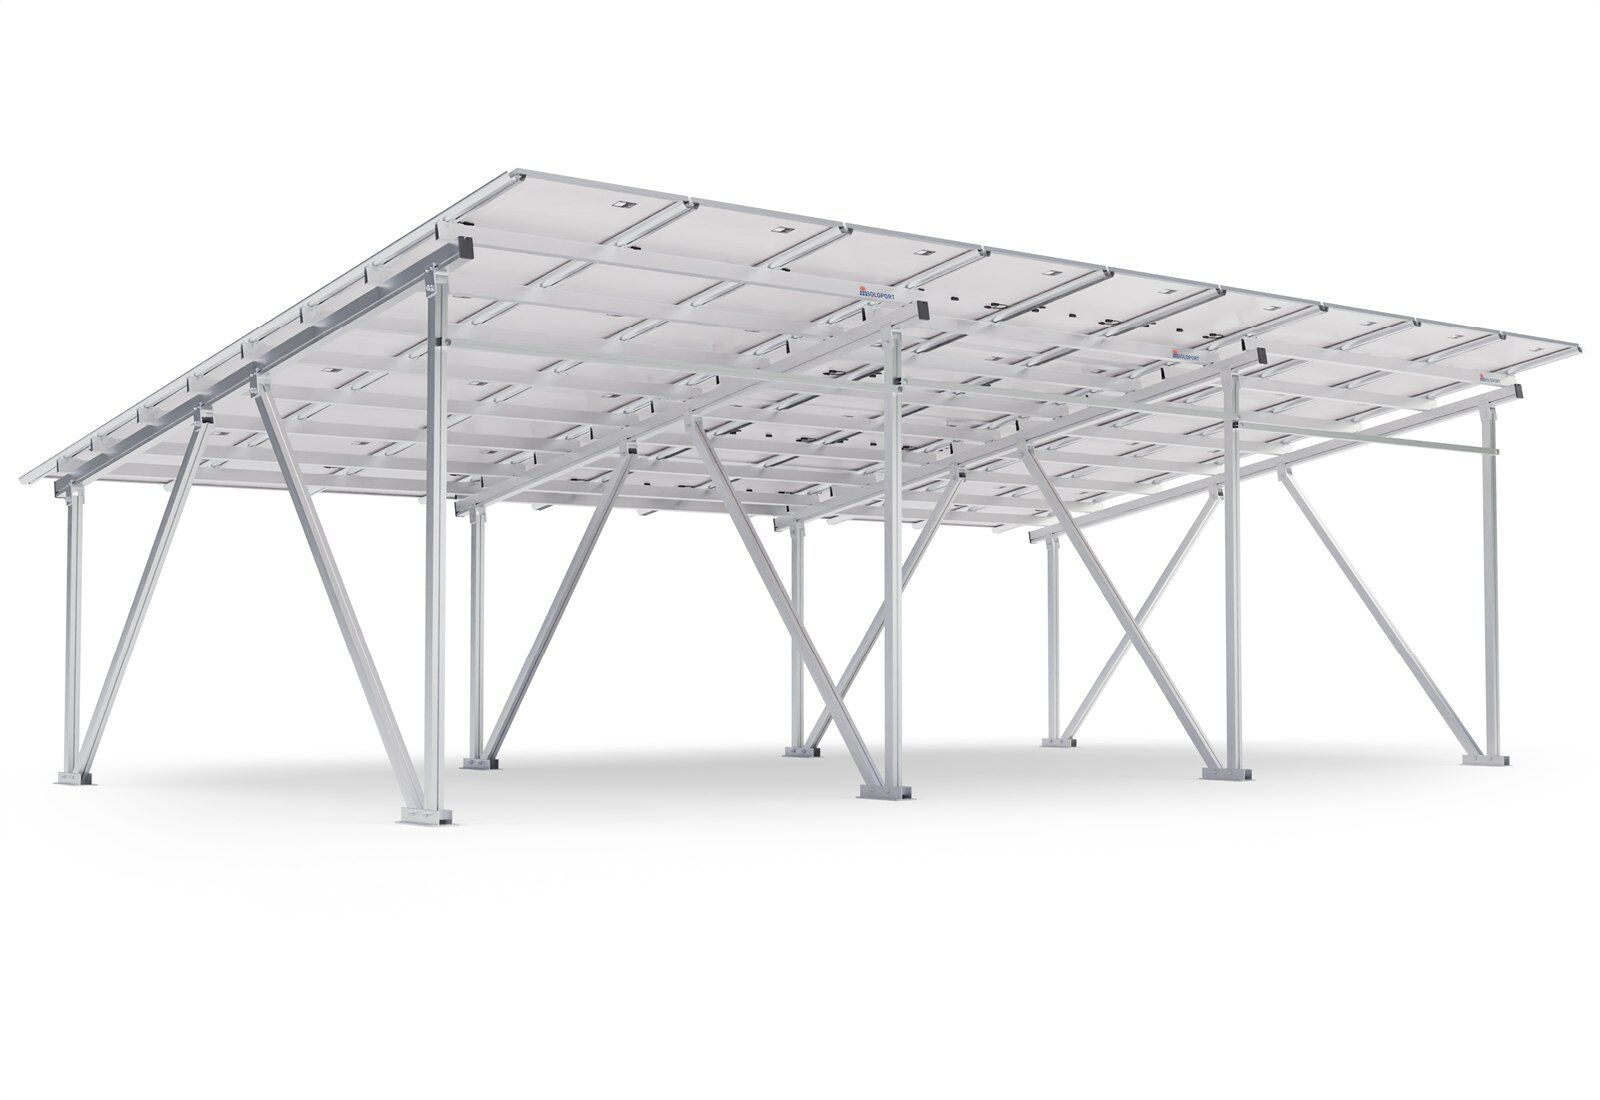 12 Panneaux solaires SPM420/108, puissance max. Puissance 420 W par module,  SoloPort